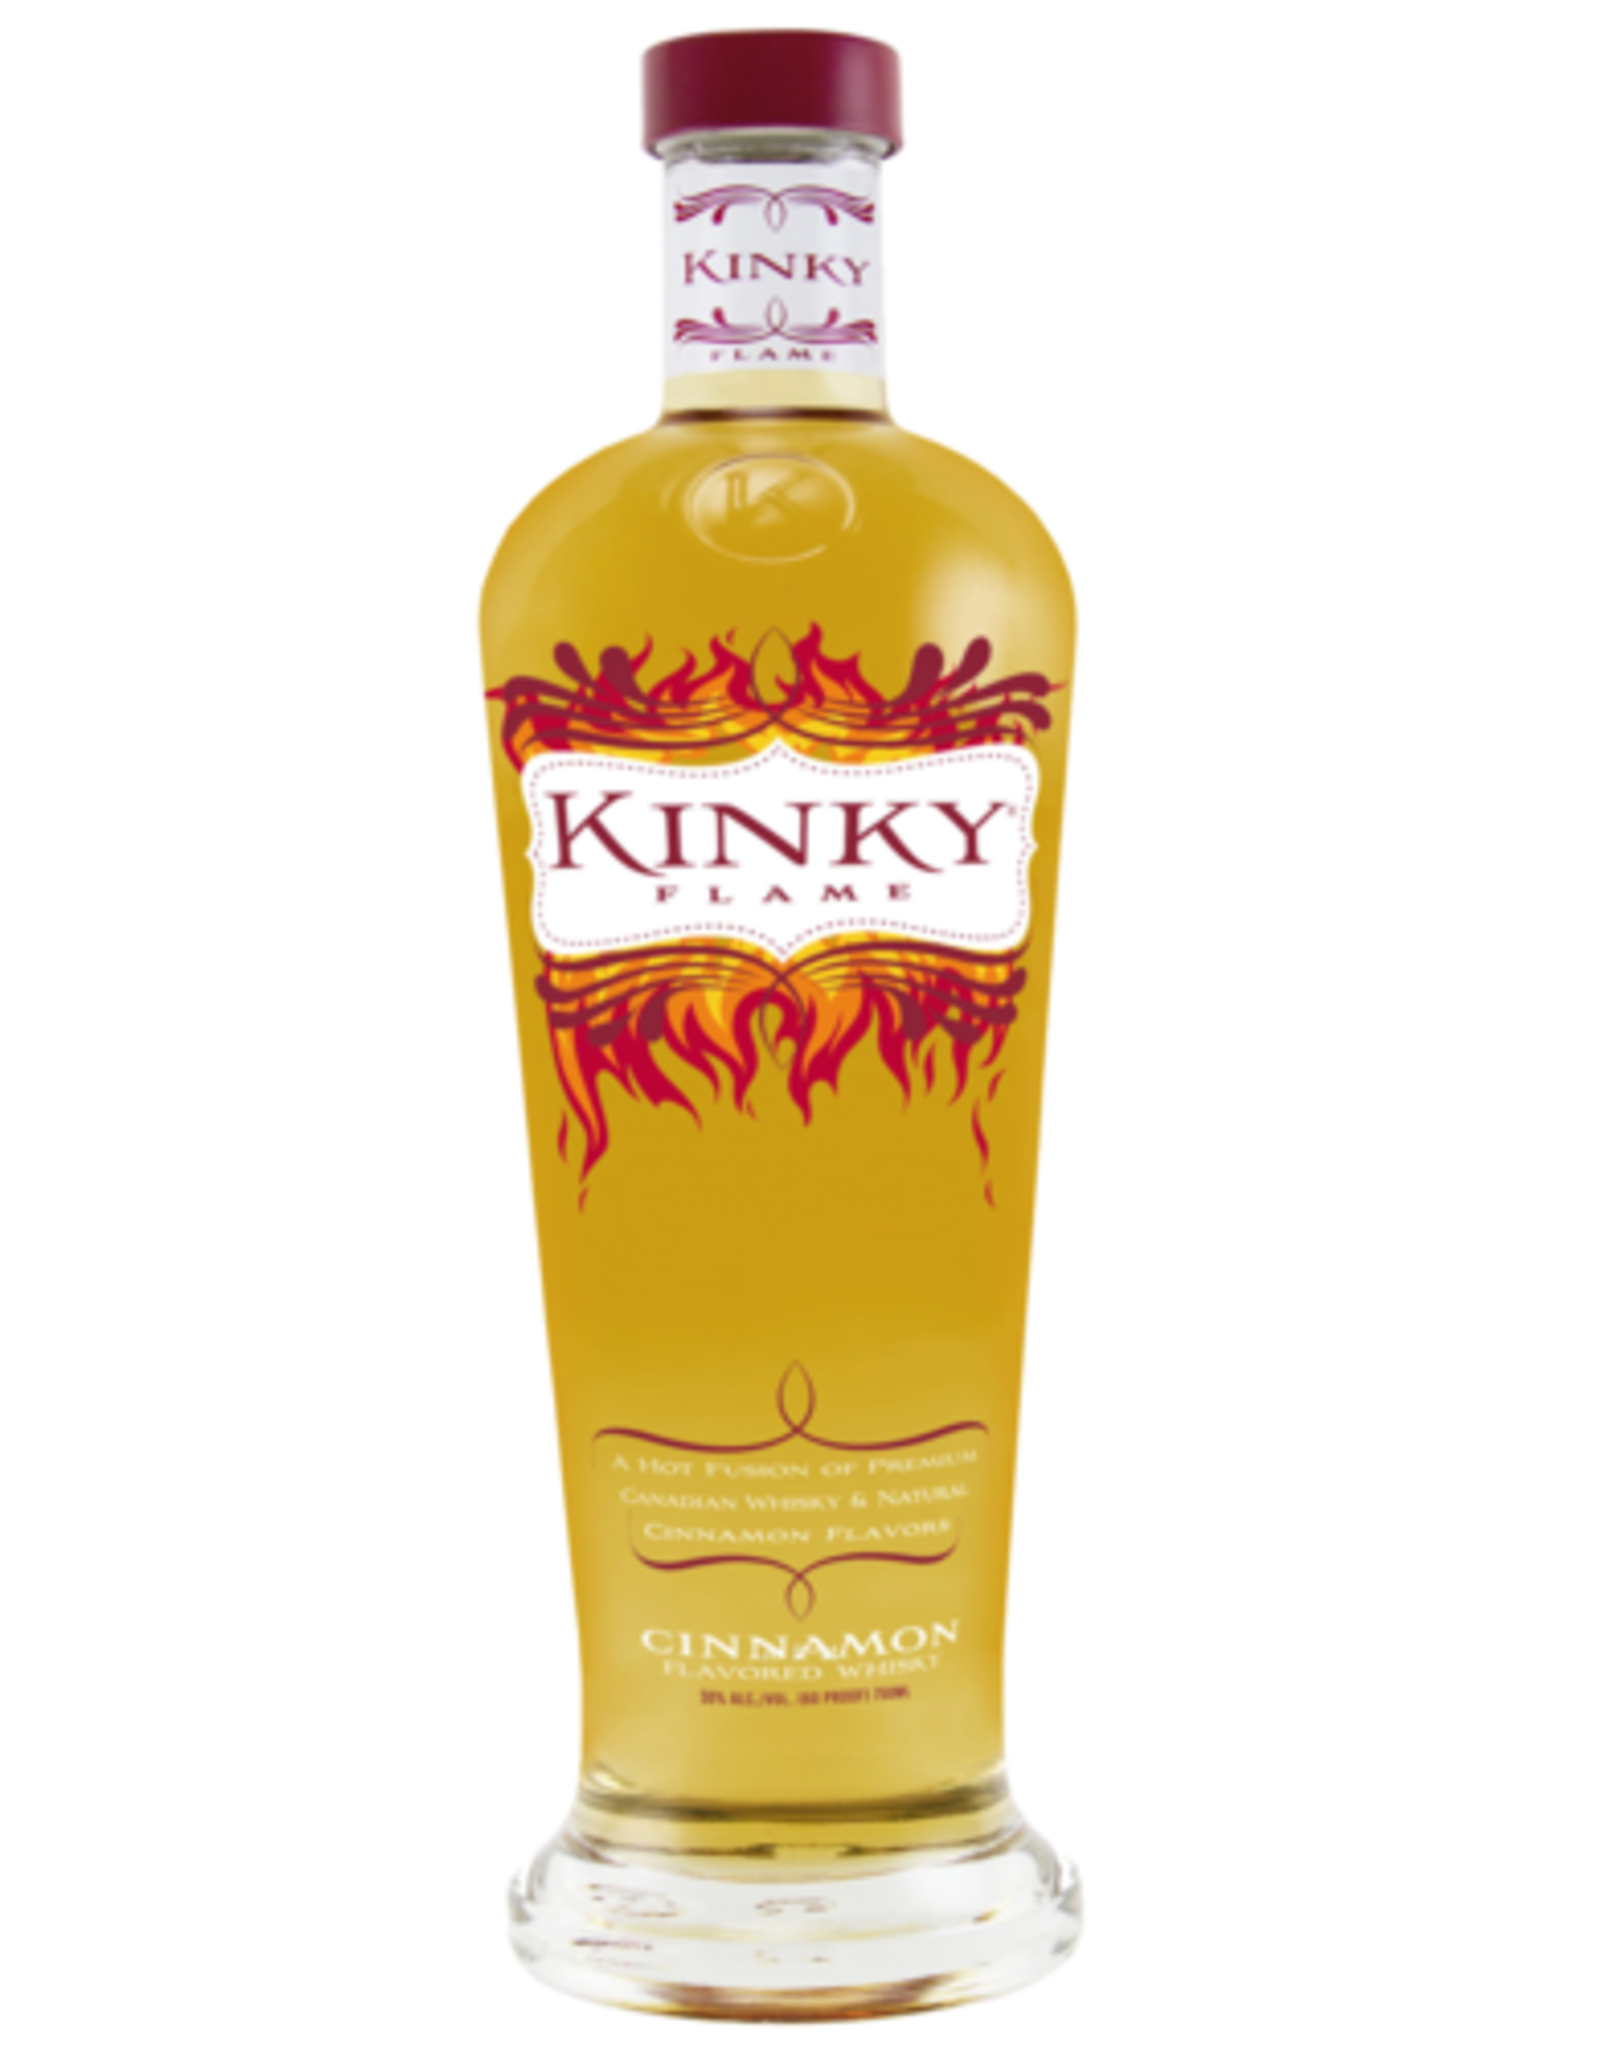 Kinky Kinky Flame